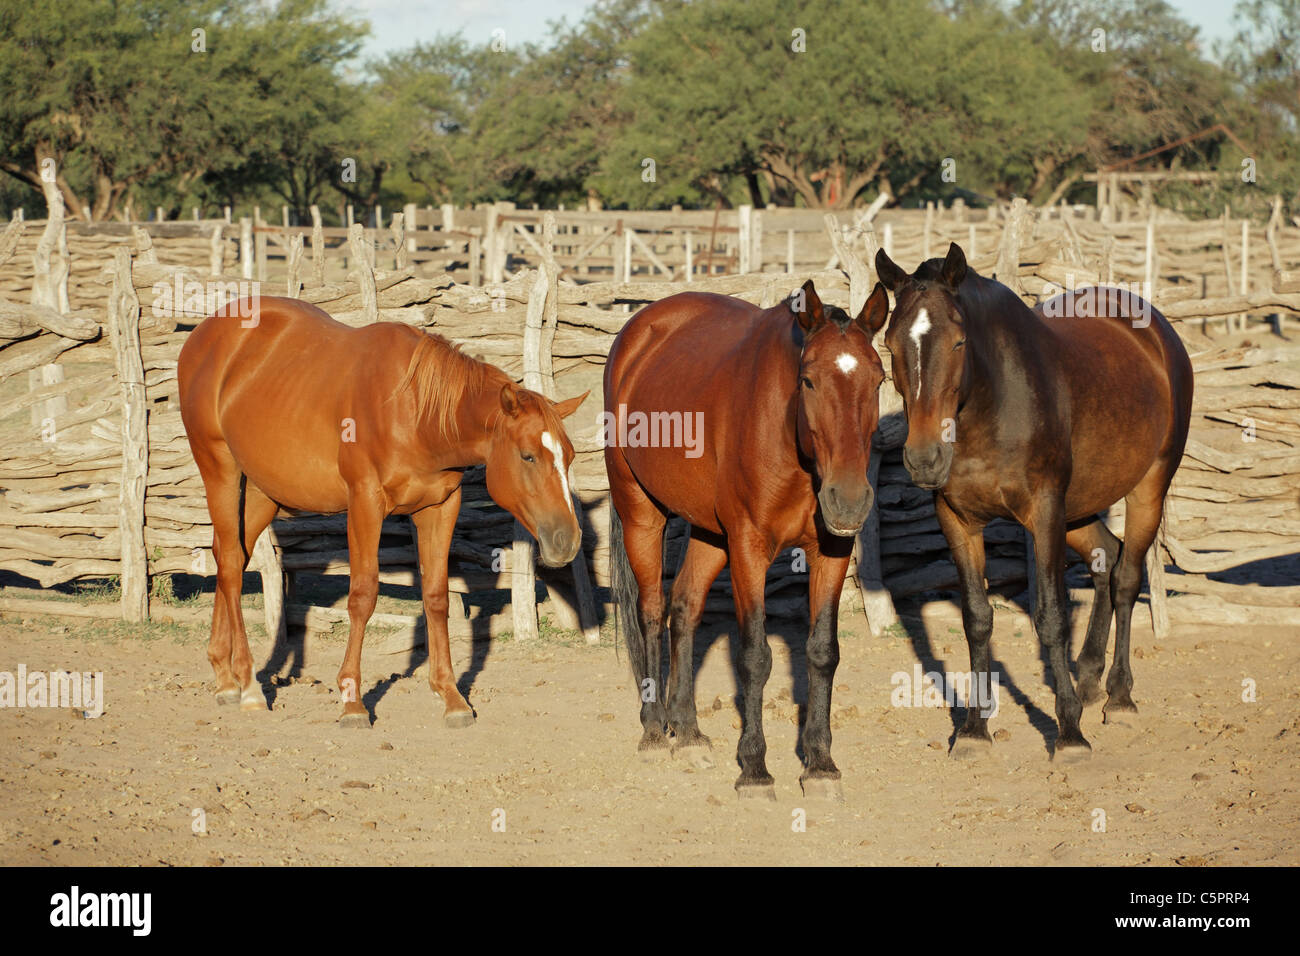 Trois chevaux debout dans un enclos en bois Banque D'Images